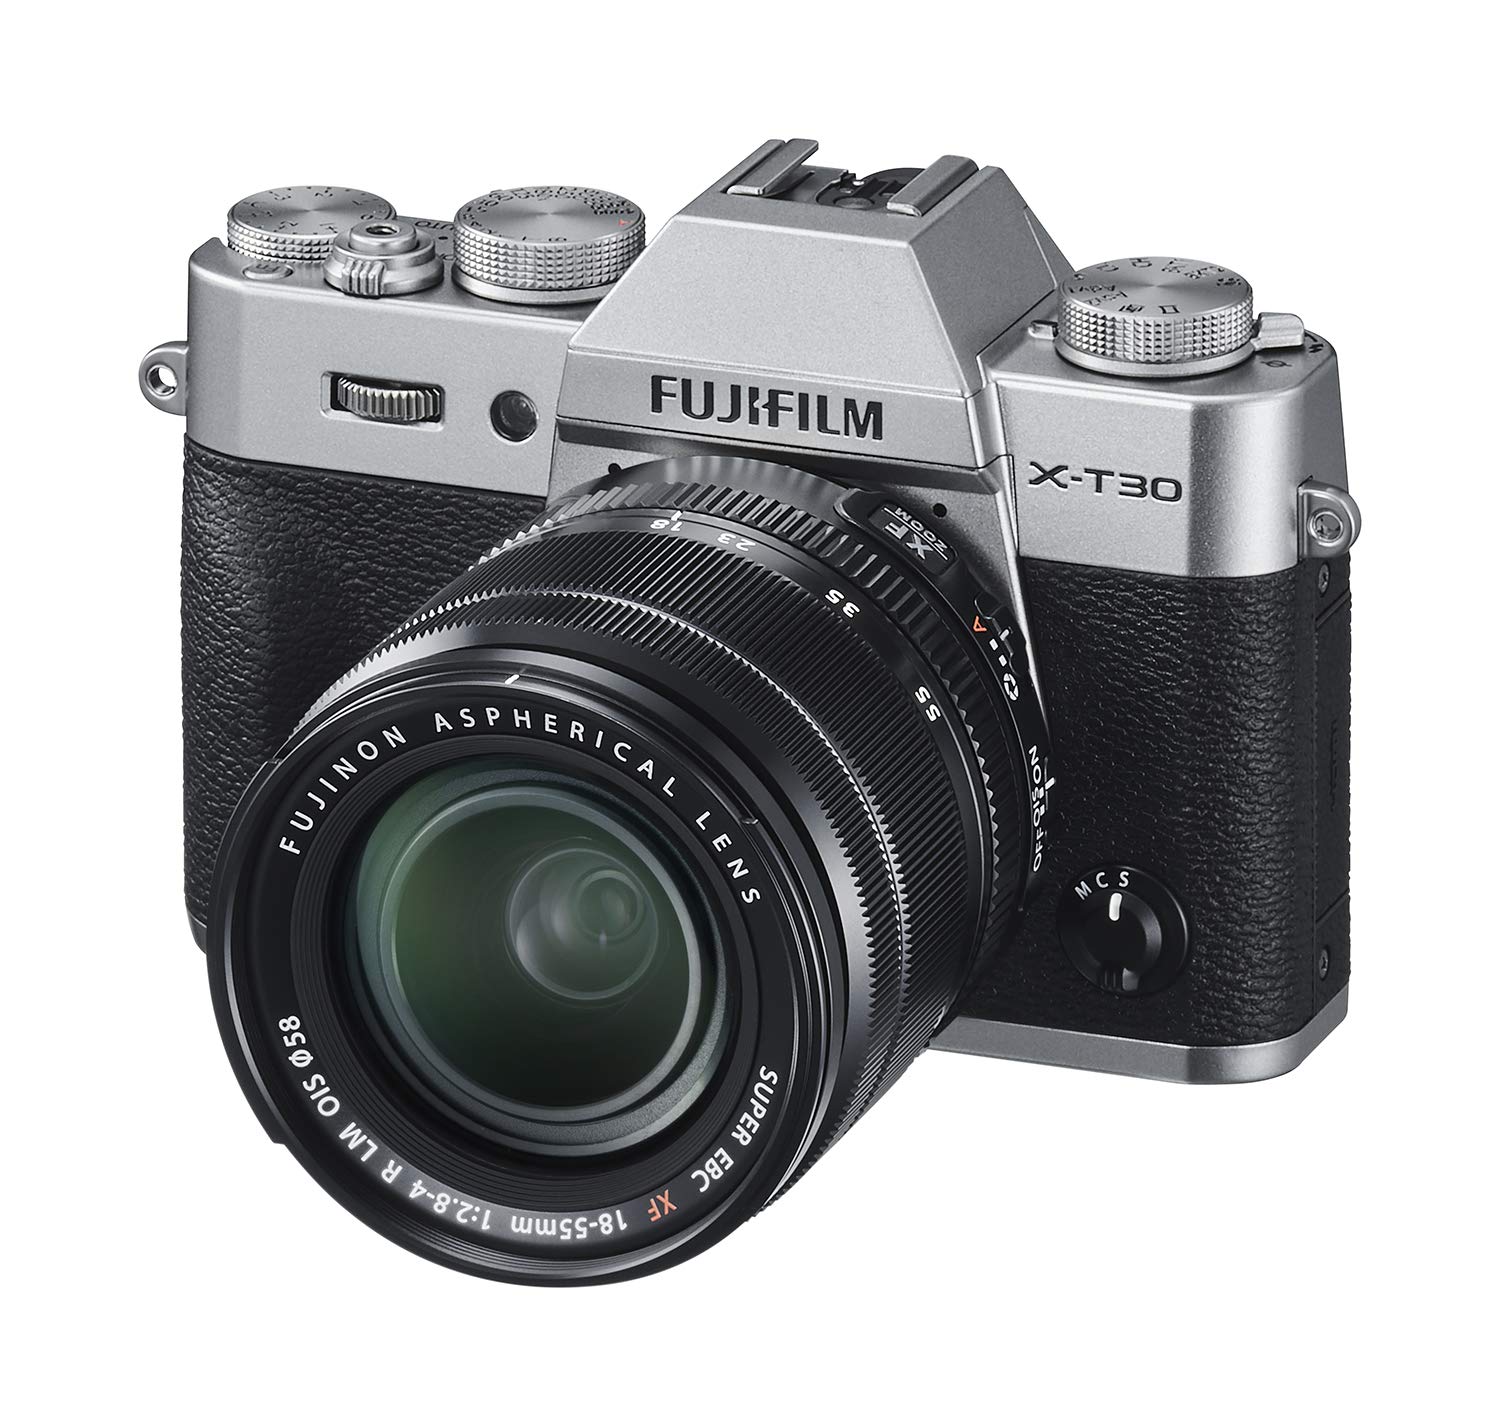 Fujifilm Aparat bezlusterkowy  X-T30 z obiektywem XF 18-55mm f/2.8-4 R LM OIS - srebrny